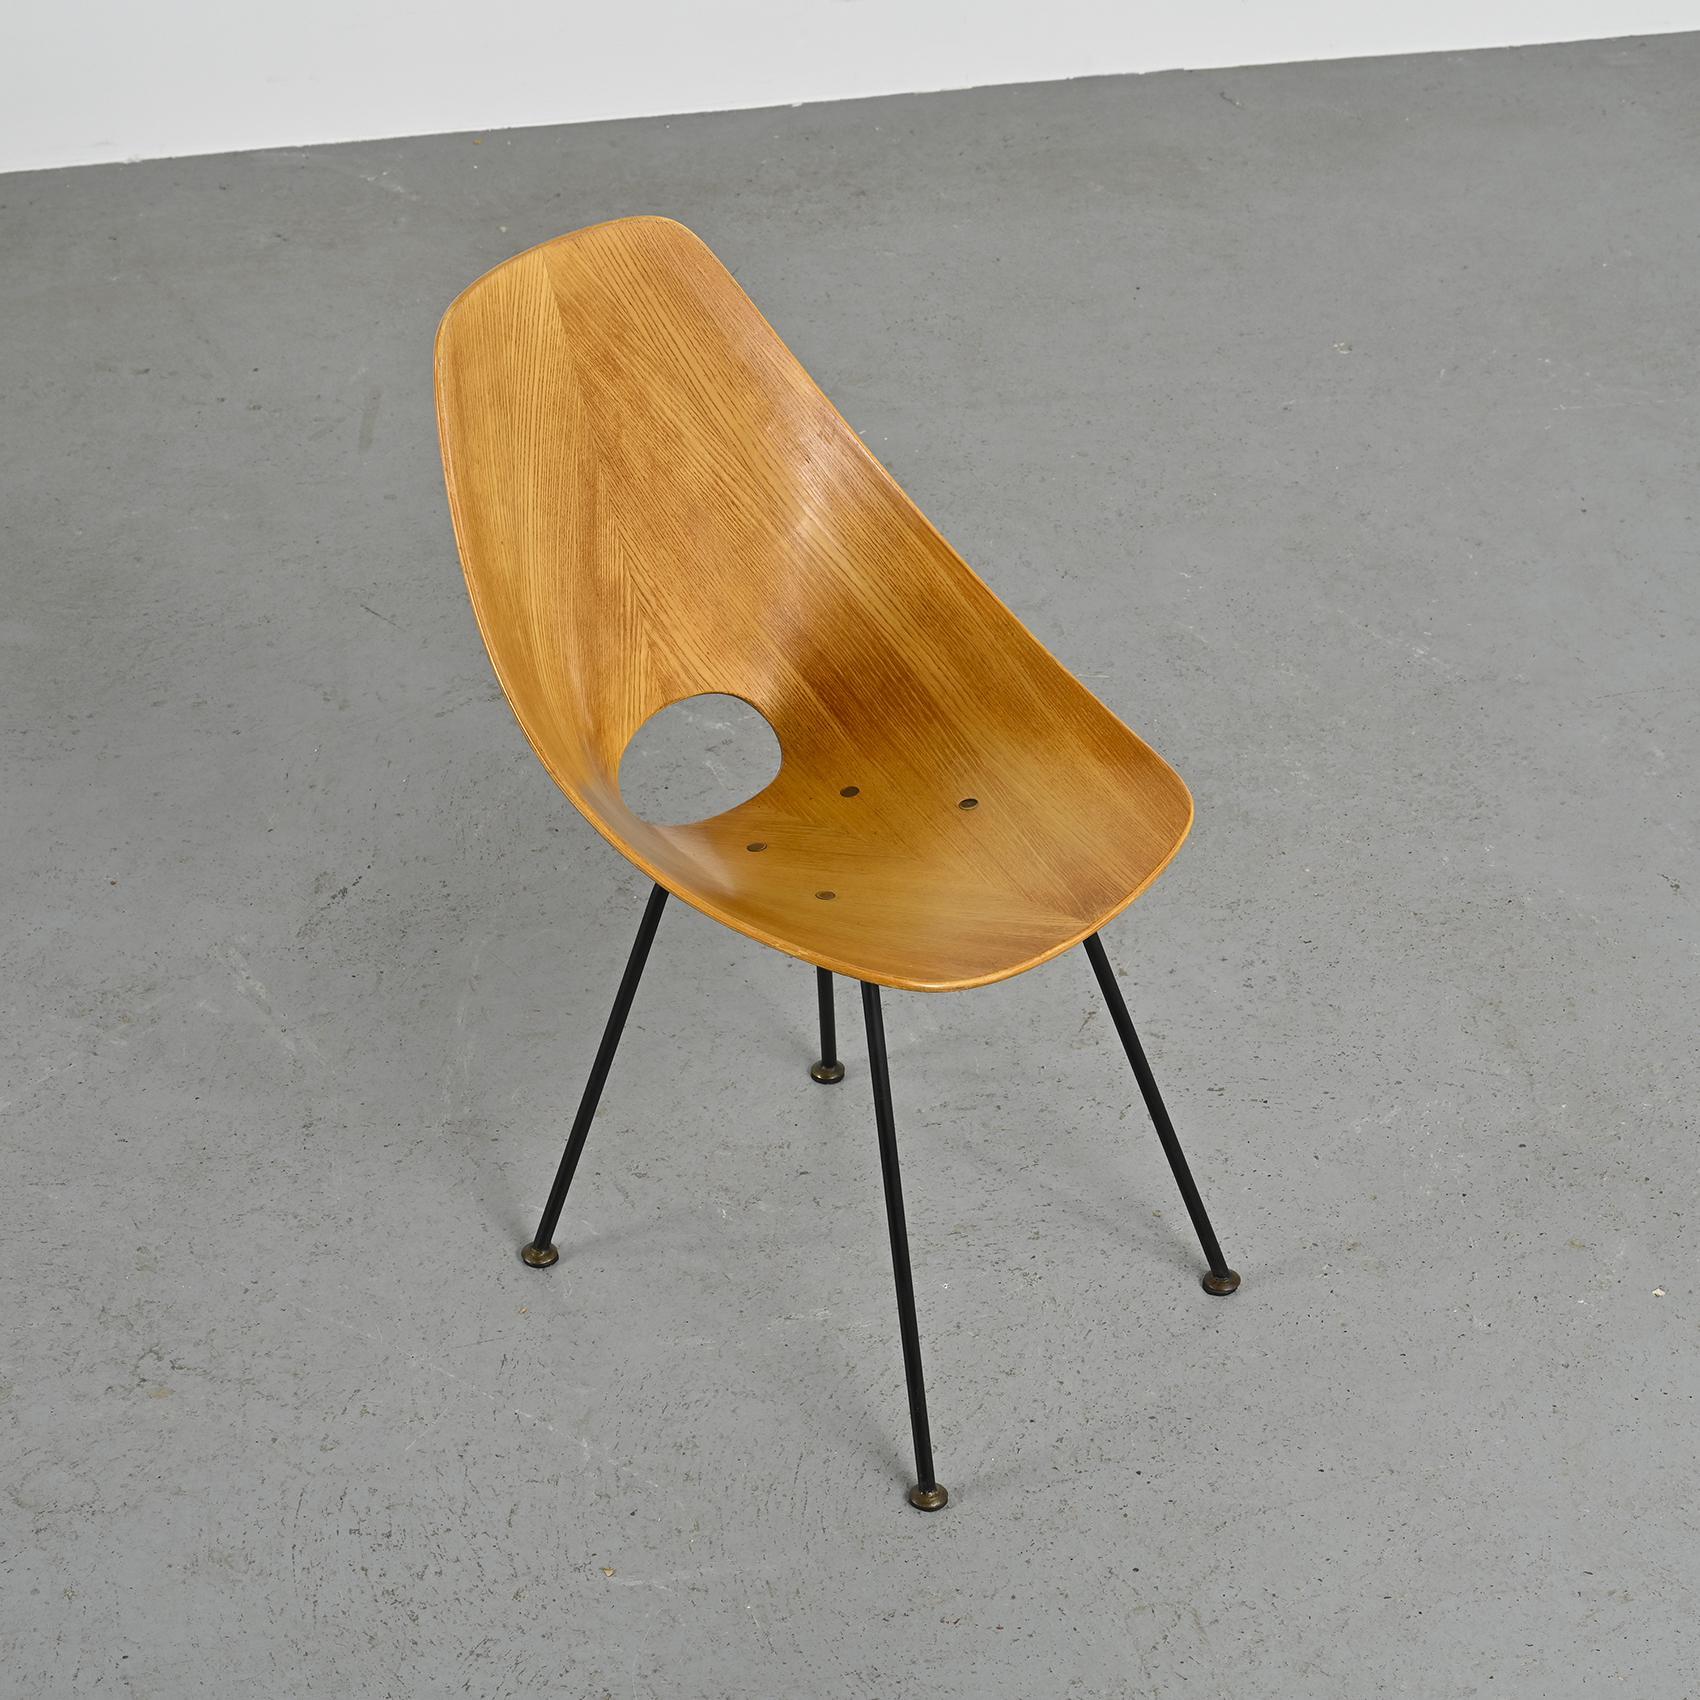 La chaise Medea, créée par le designer italien Vittorio Nobilis, est une pièce emblématique du design moderniste du milieu du XXe siècle. Né dans les années 1950, il incarne l'esthétique avant-gardiste de l'époque avec ses lignes épurées et ses